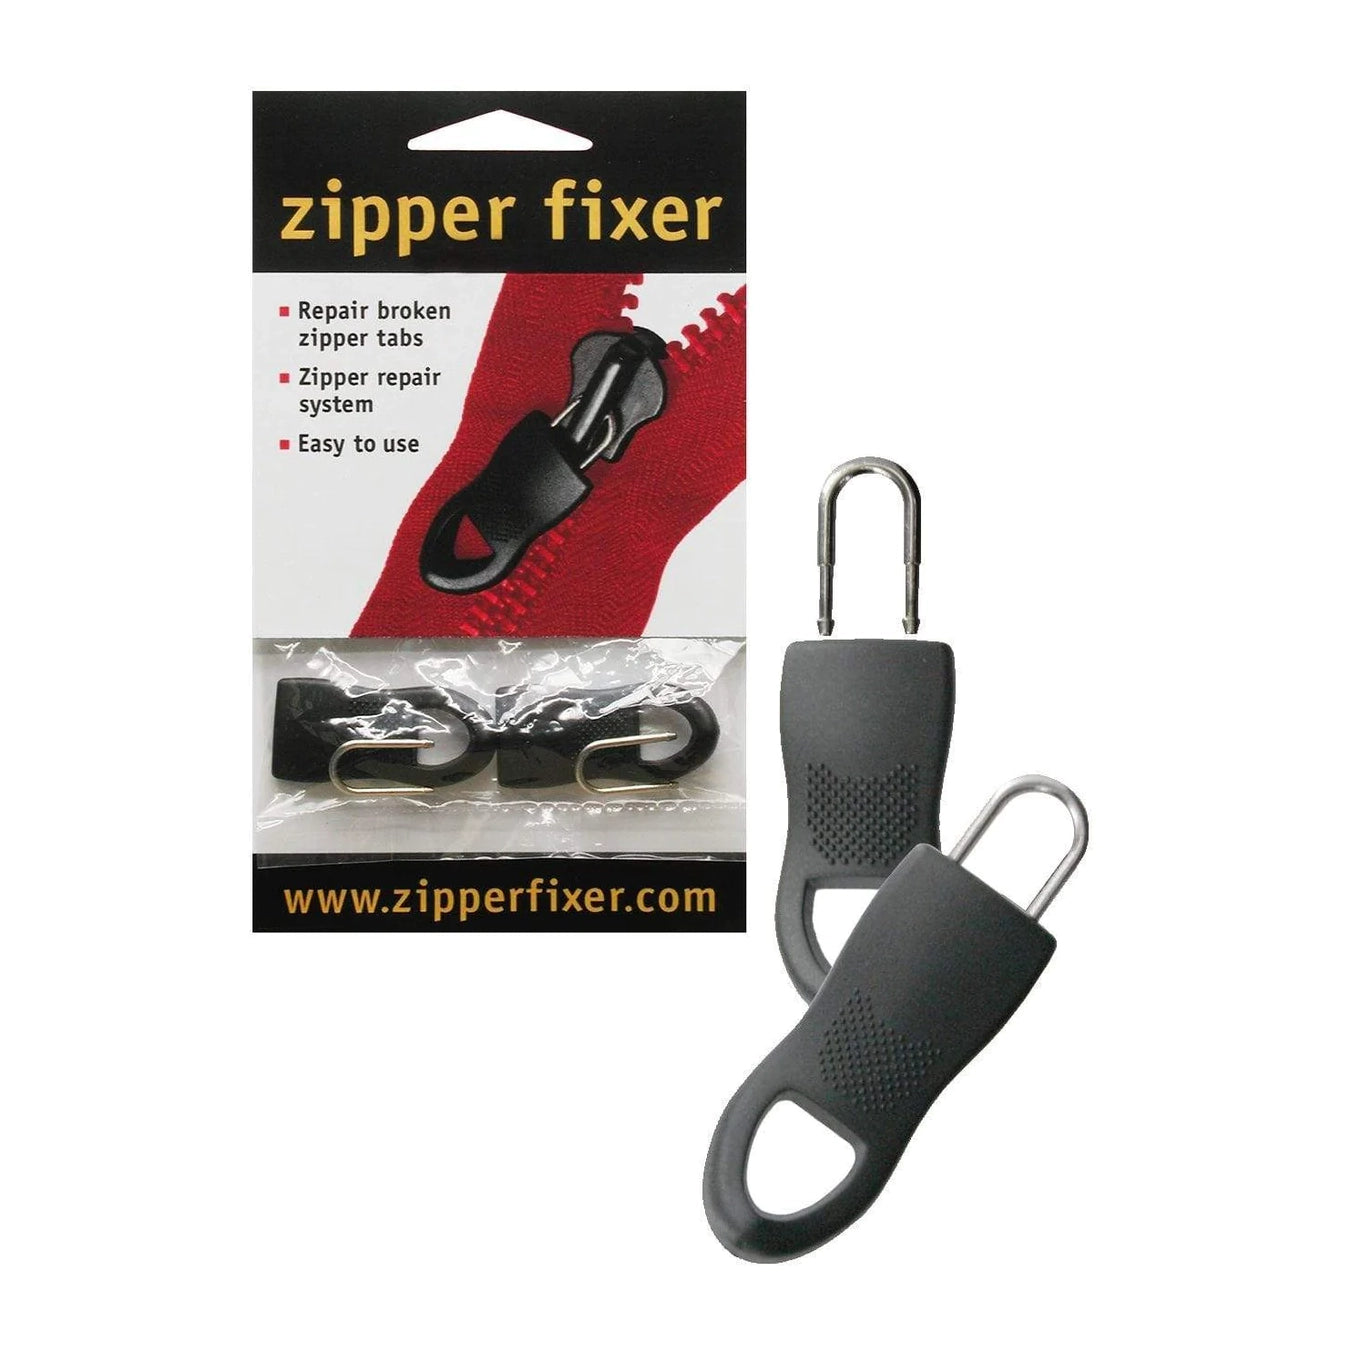 Elegant Zipper Pull pull-tab Replacement / Repair for 